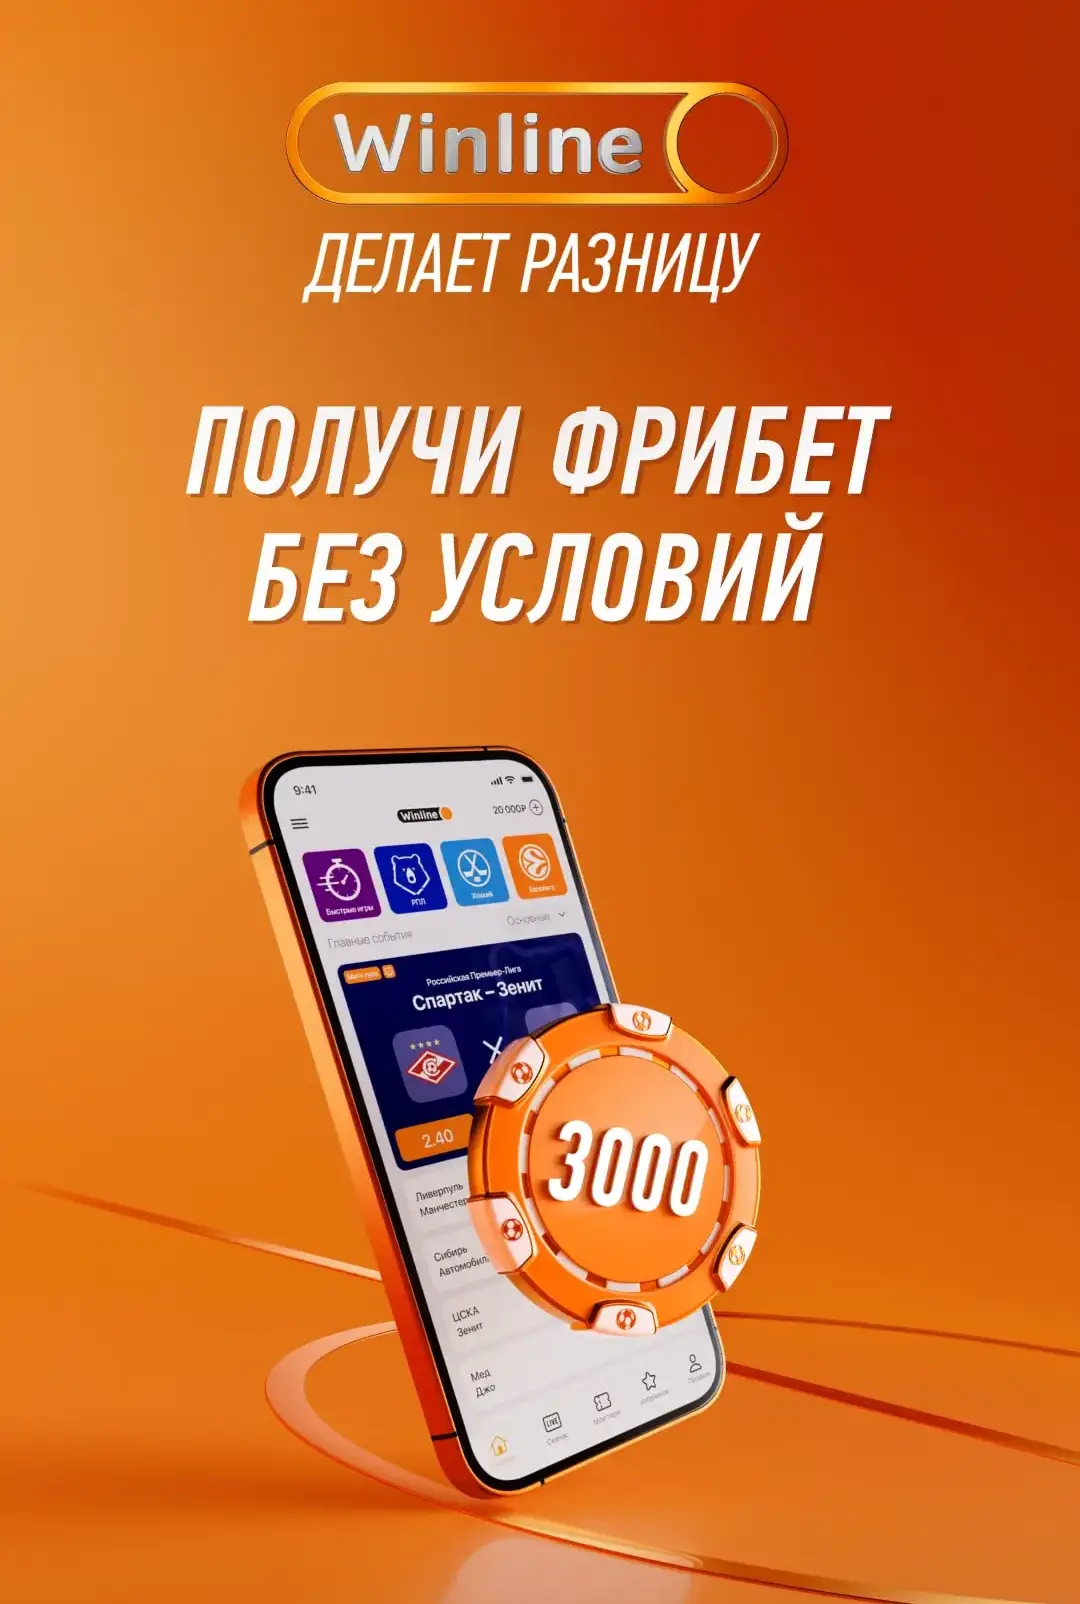 Фрибет 3000 рублей от Винлайн